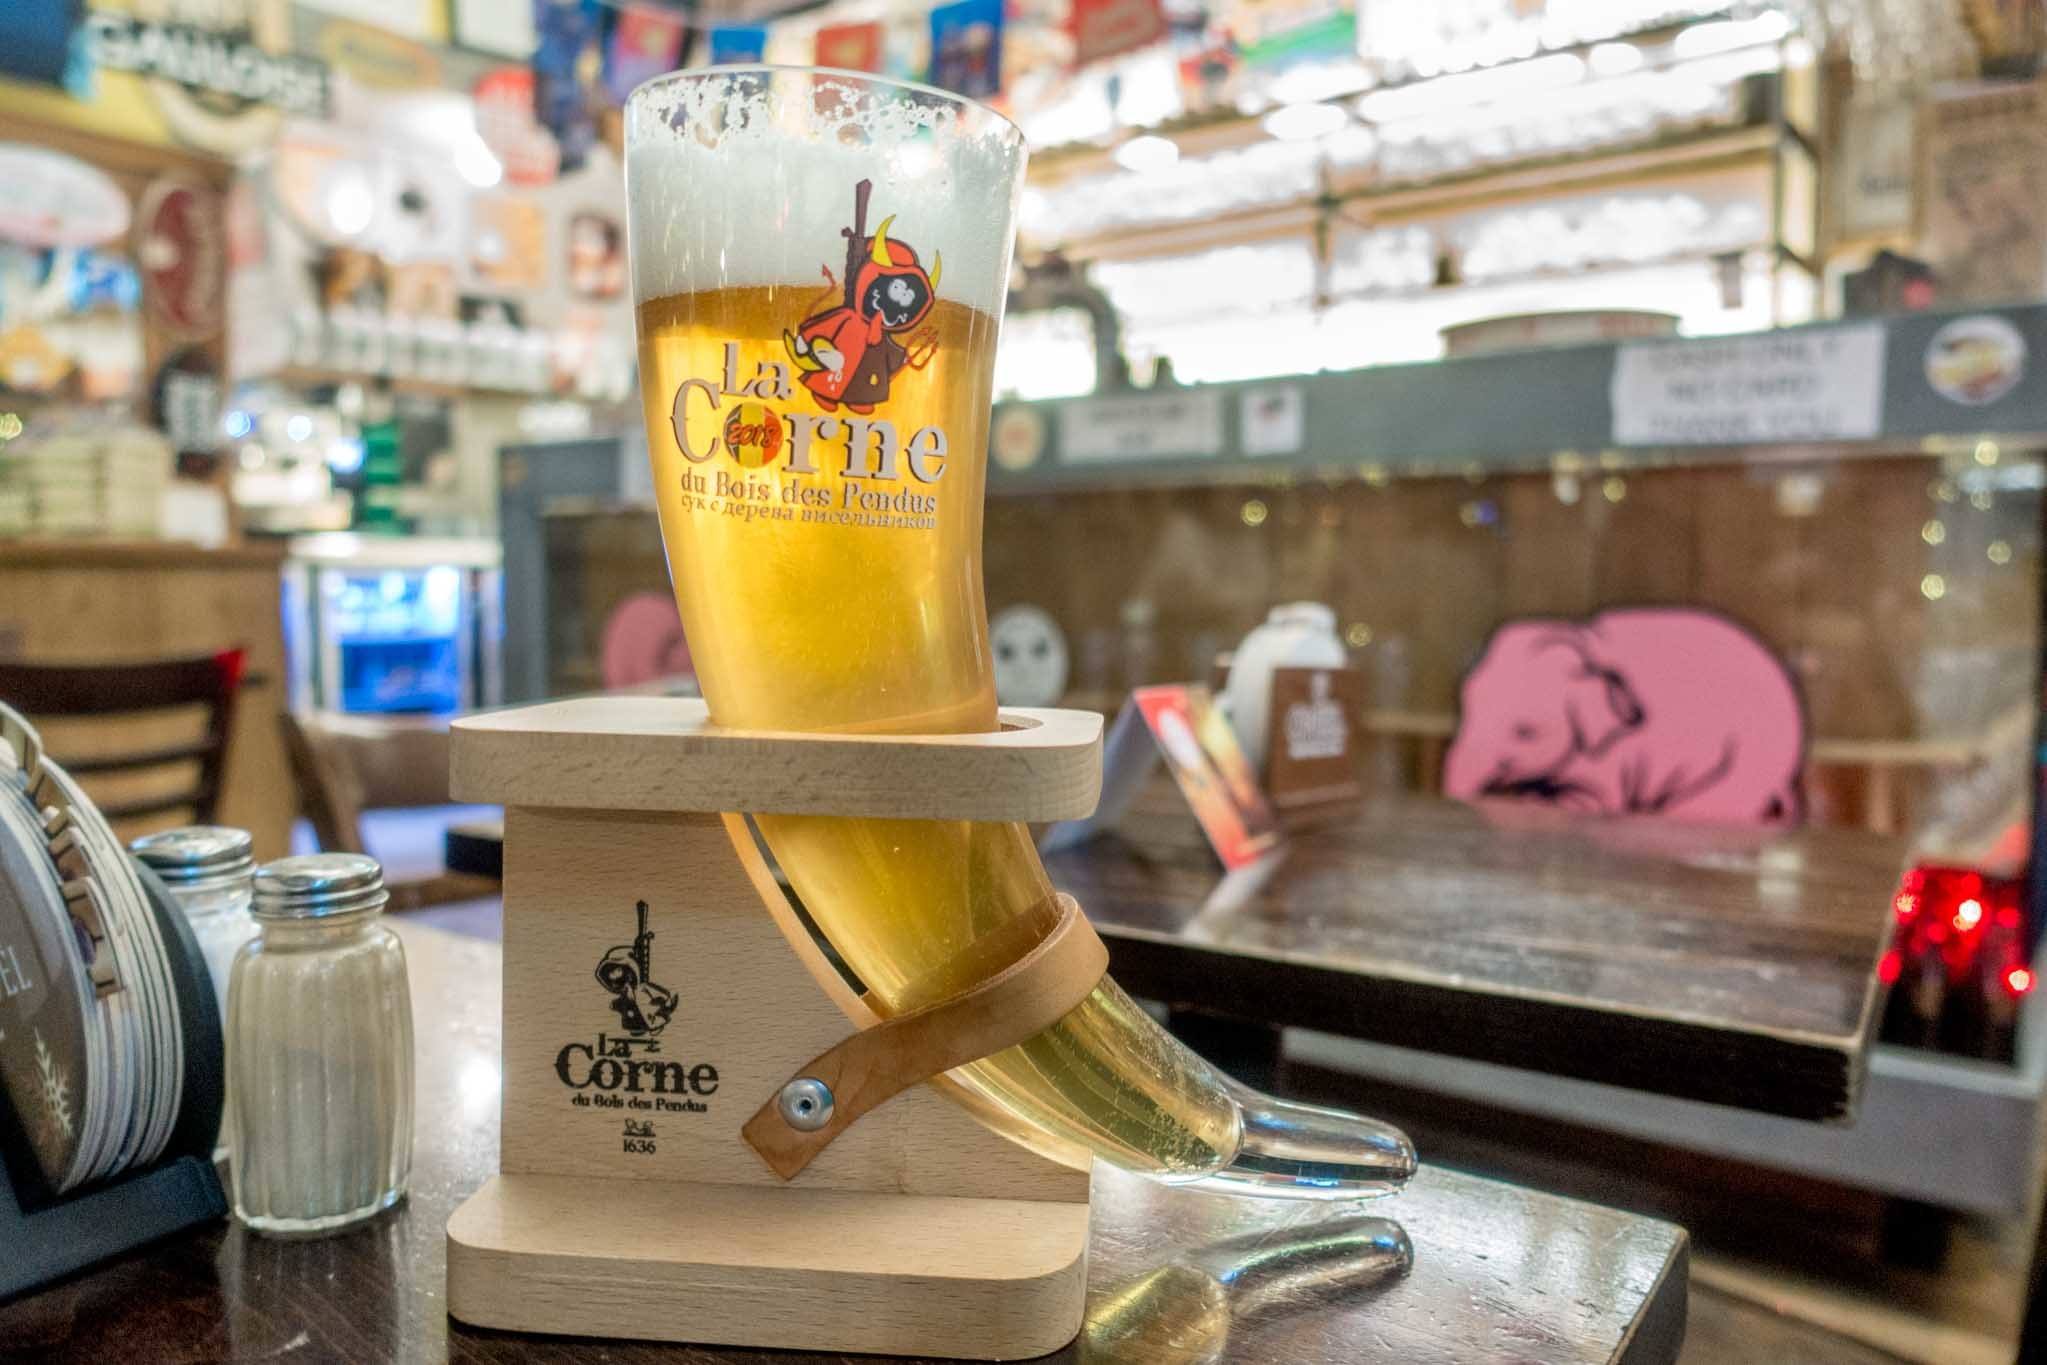 Horn-shaped glass full of beer